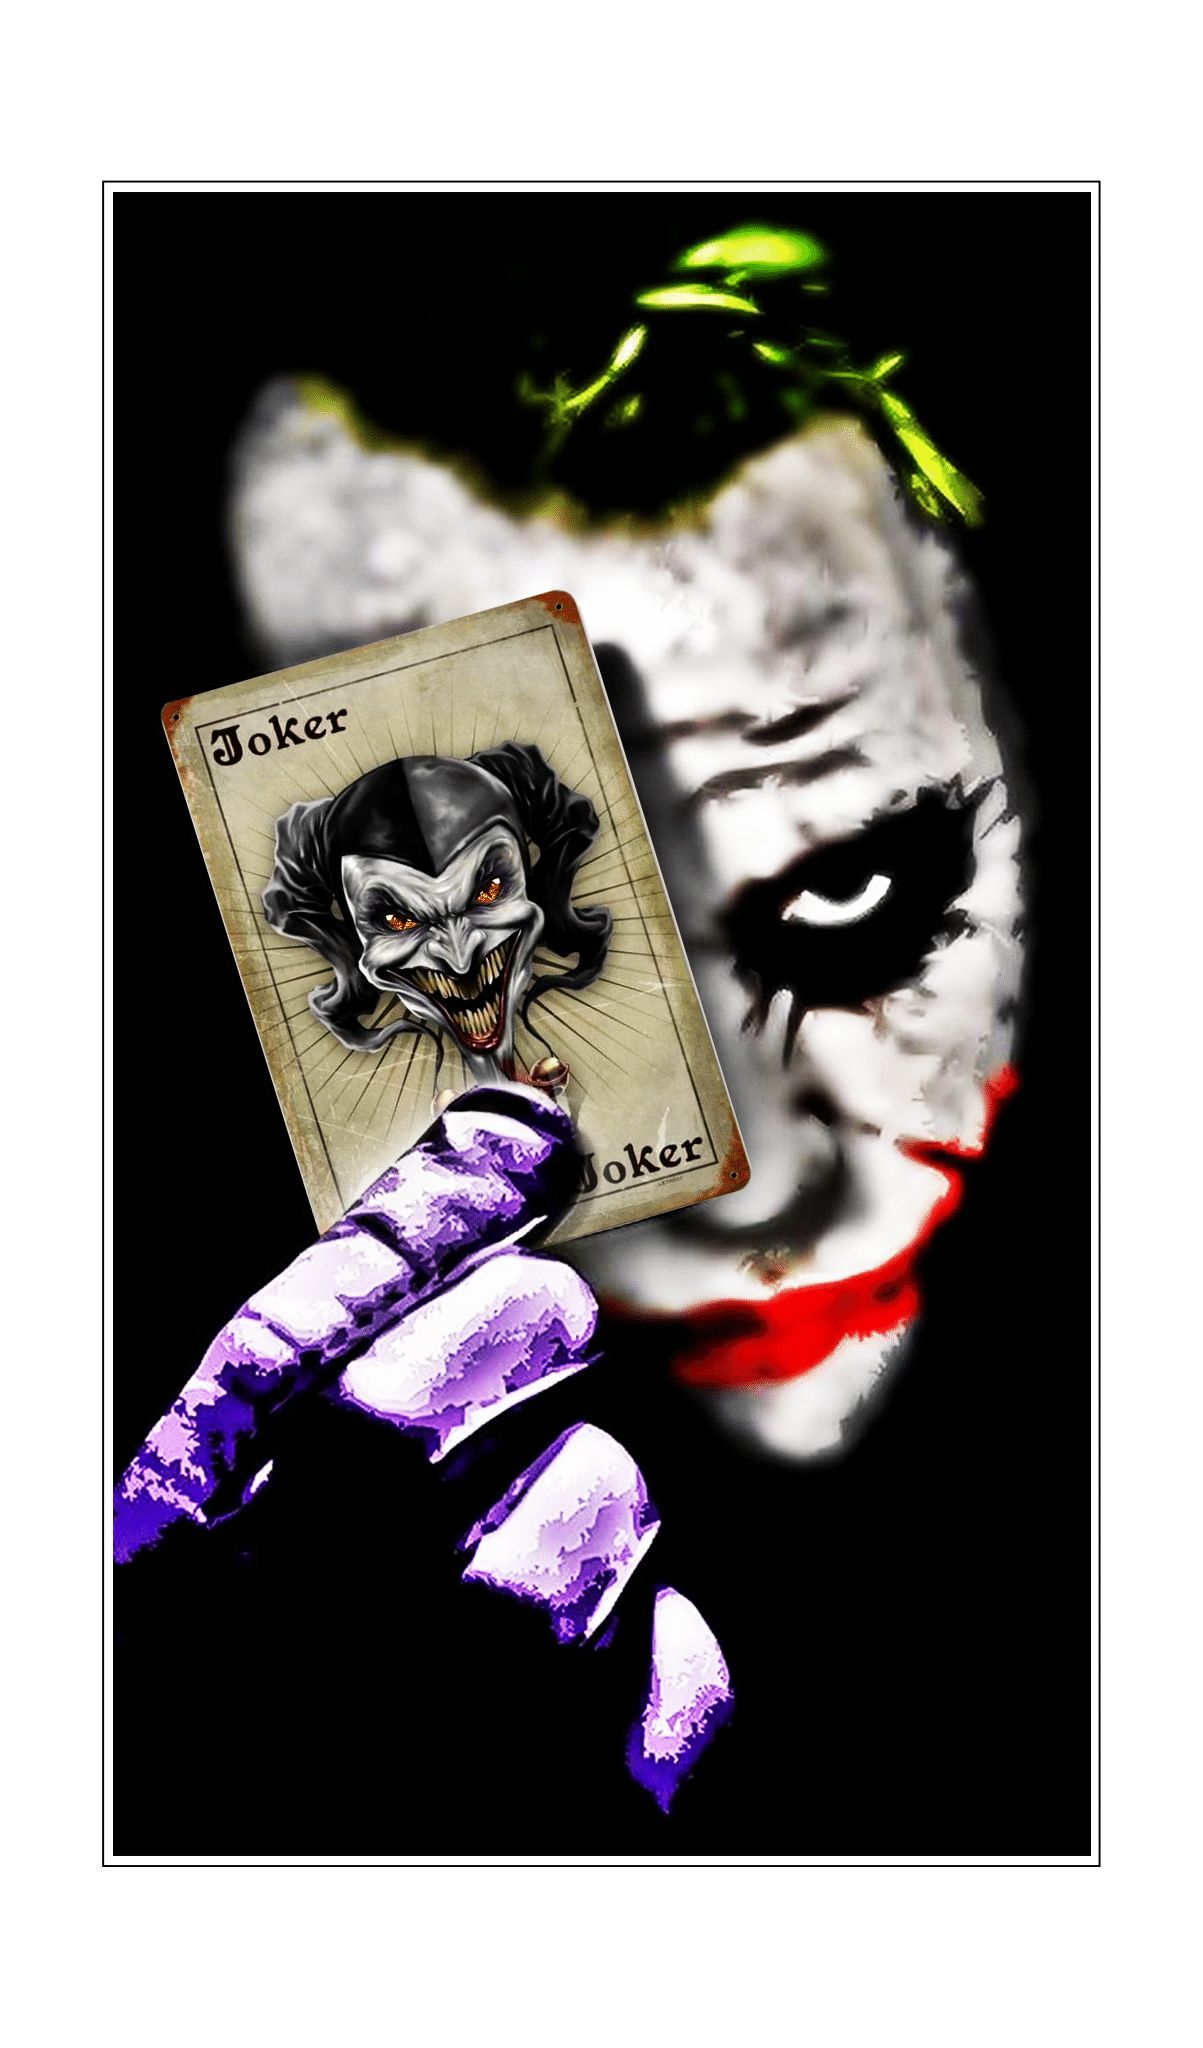 Joker With Joker Card vinyl sticker printed vinyl decal - AG Design